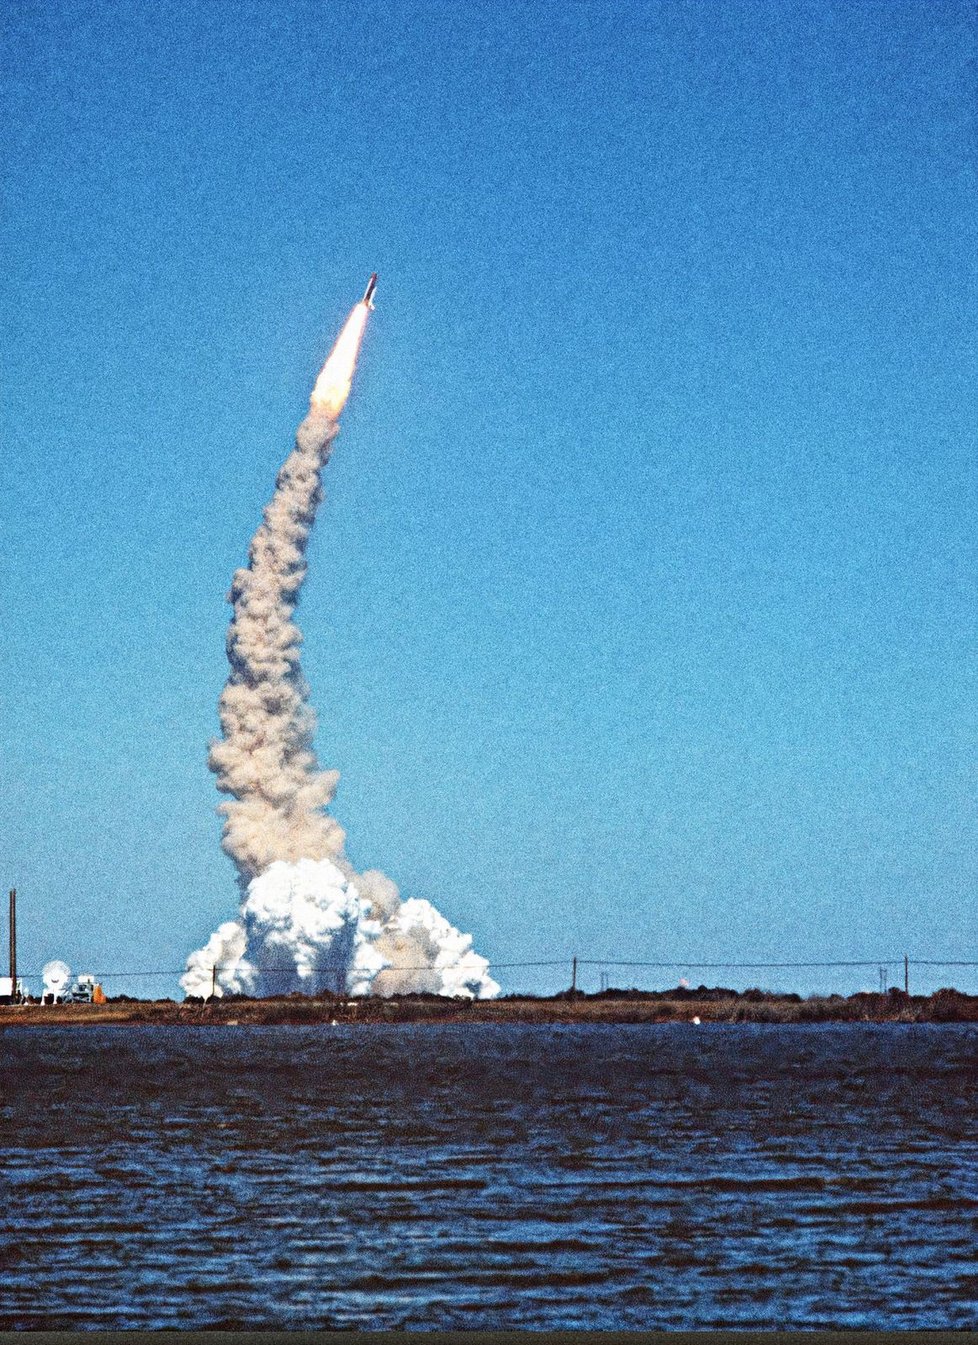 Raketoplán Challenger vybuchl 73 sekund po startu, na vině bylo vadné těsnění pomocné rakety.